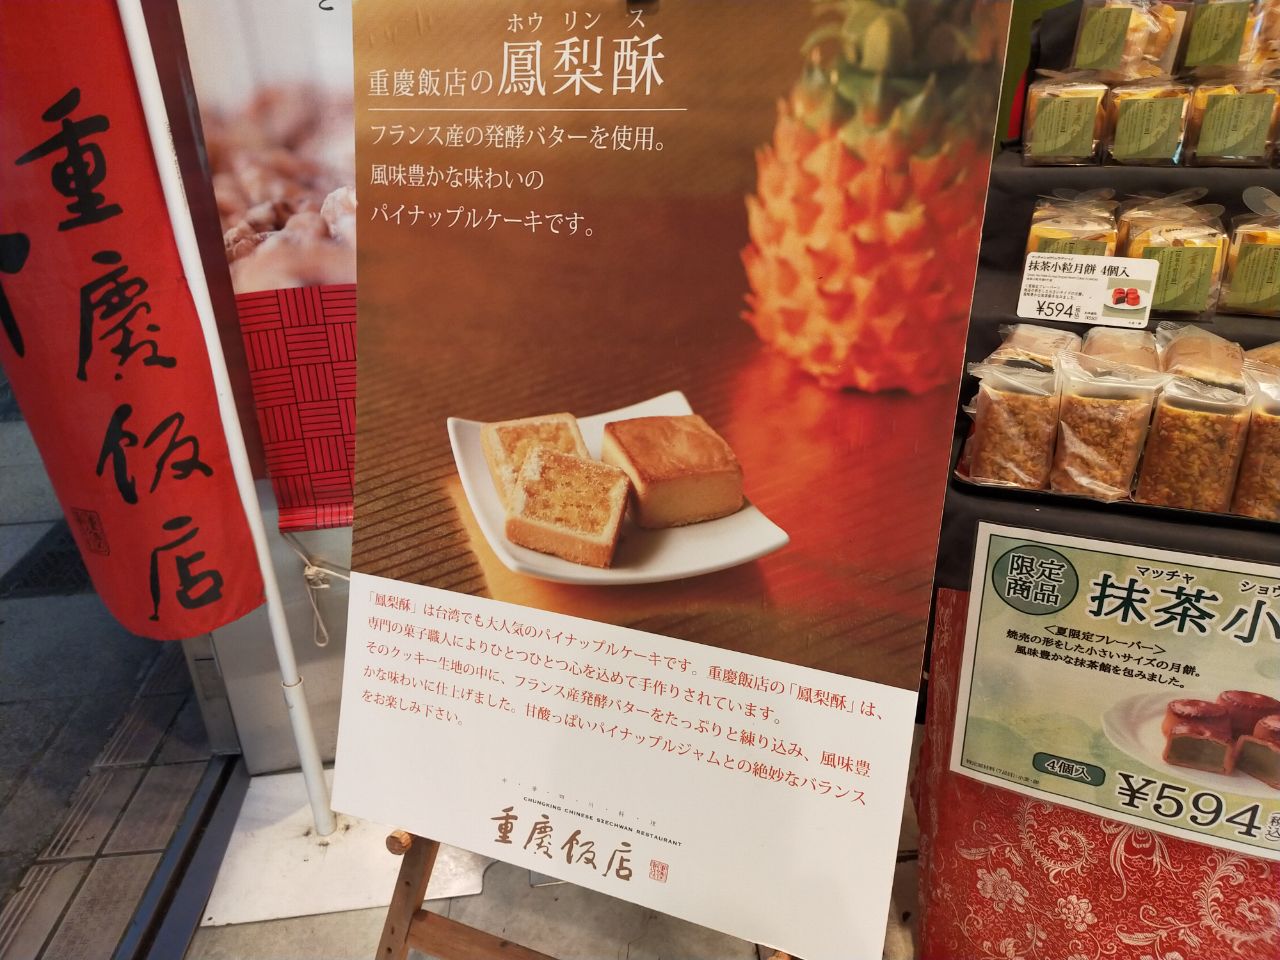 横浜中華街 重慶飯店のパイナップルケーキ トラベルラウンジ 旅とグルメ